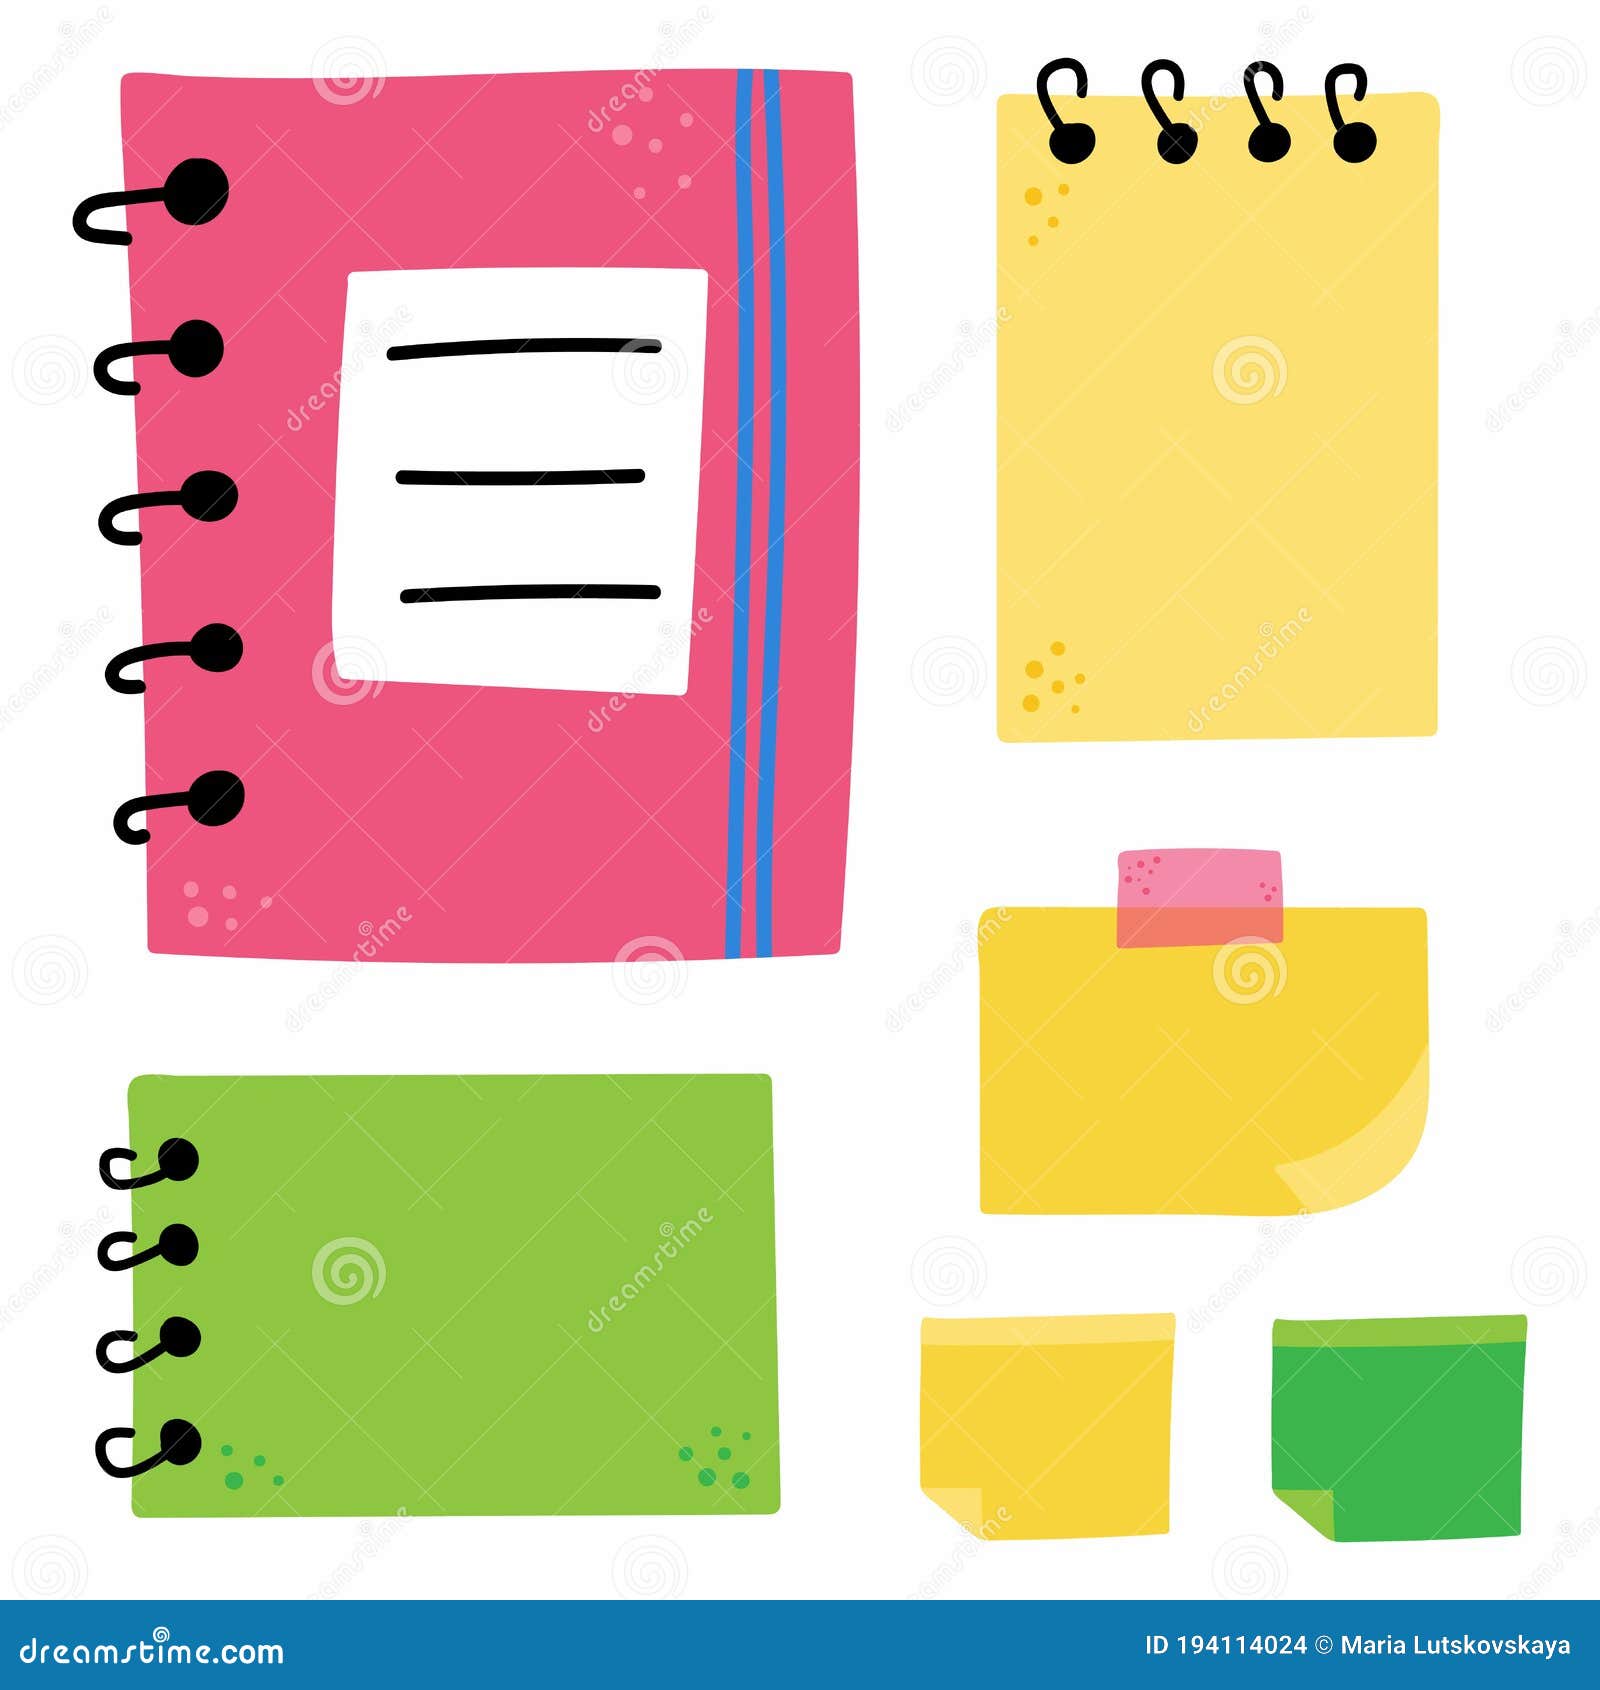 material escolar, papelería y espacio para texto en el bloc de notas  Fotografía de stock - Alamy